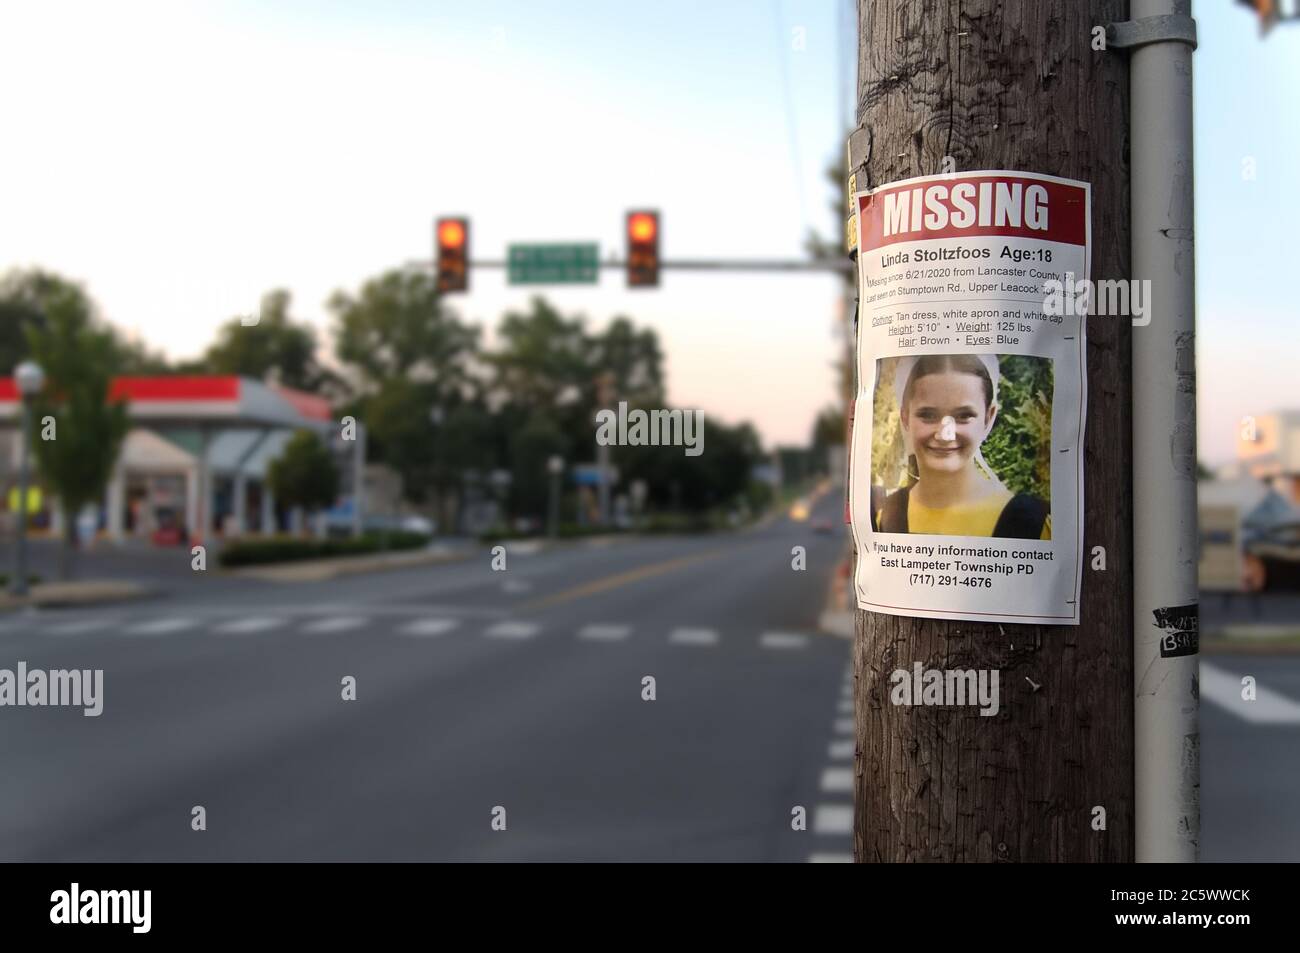 Signe manquant sur un poteau téléphonique pour l'adolescent Amish disparu Linda Stoltfoos, à Lititz, Pennsylvanie Banque D'Images